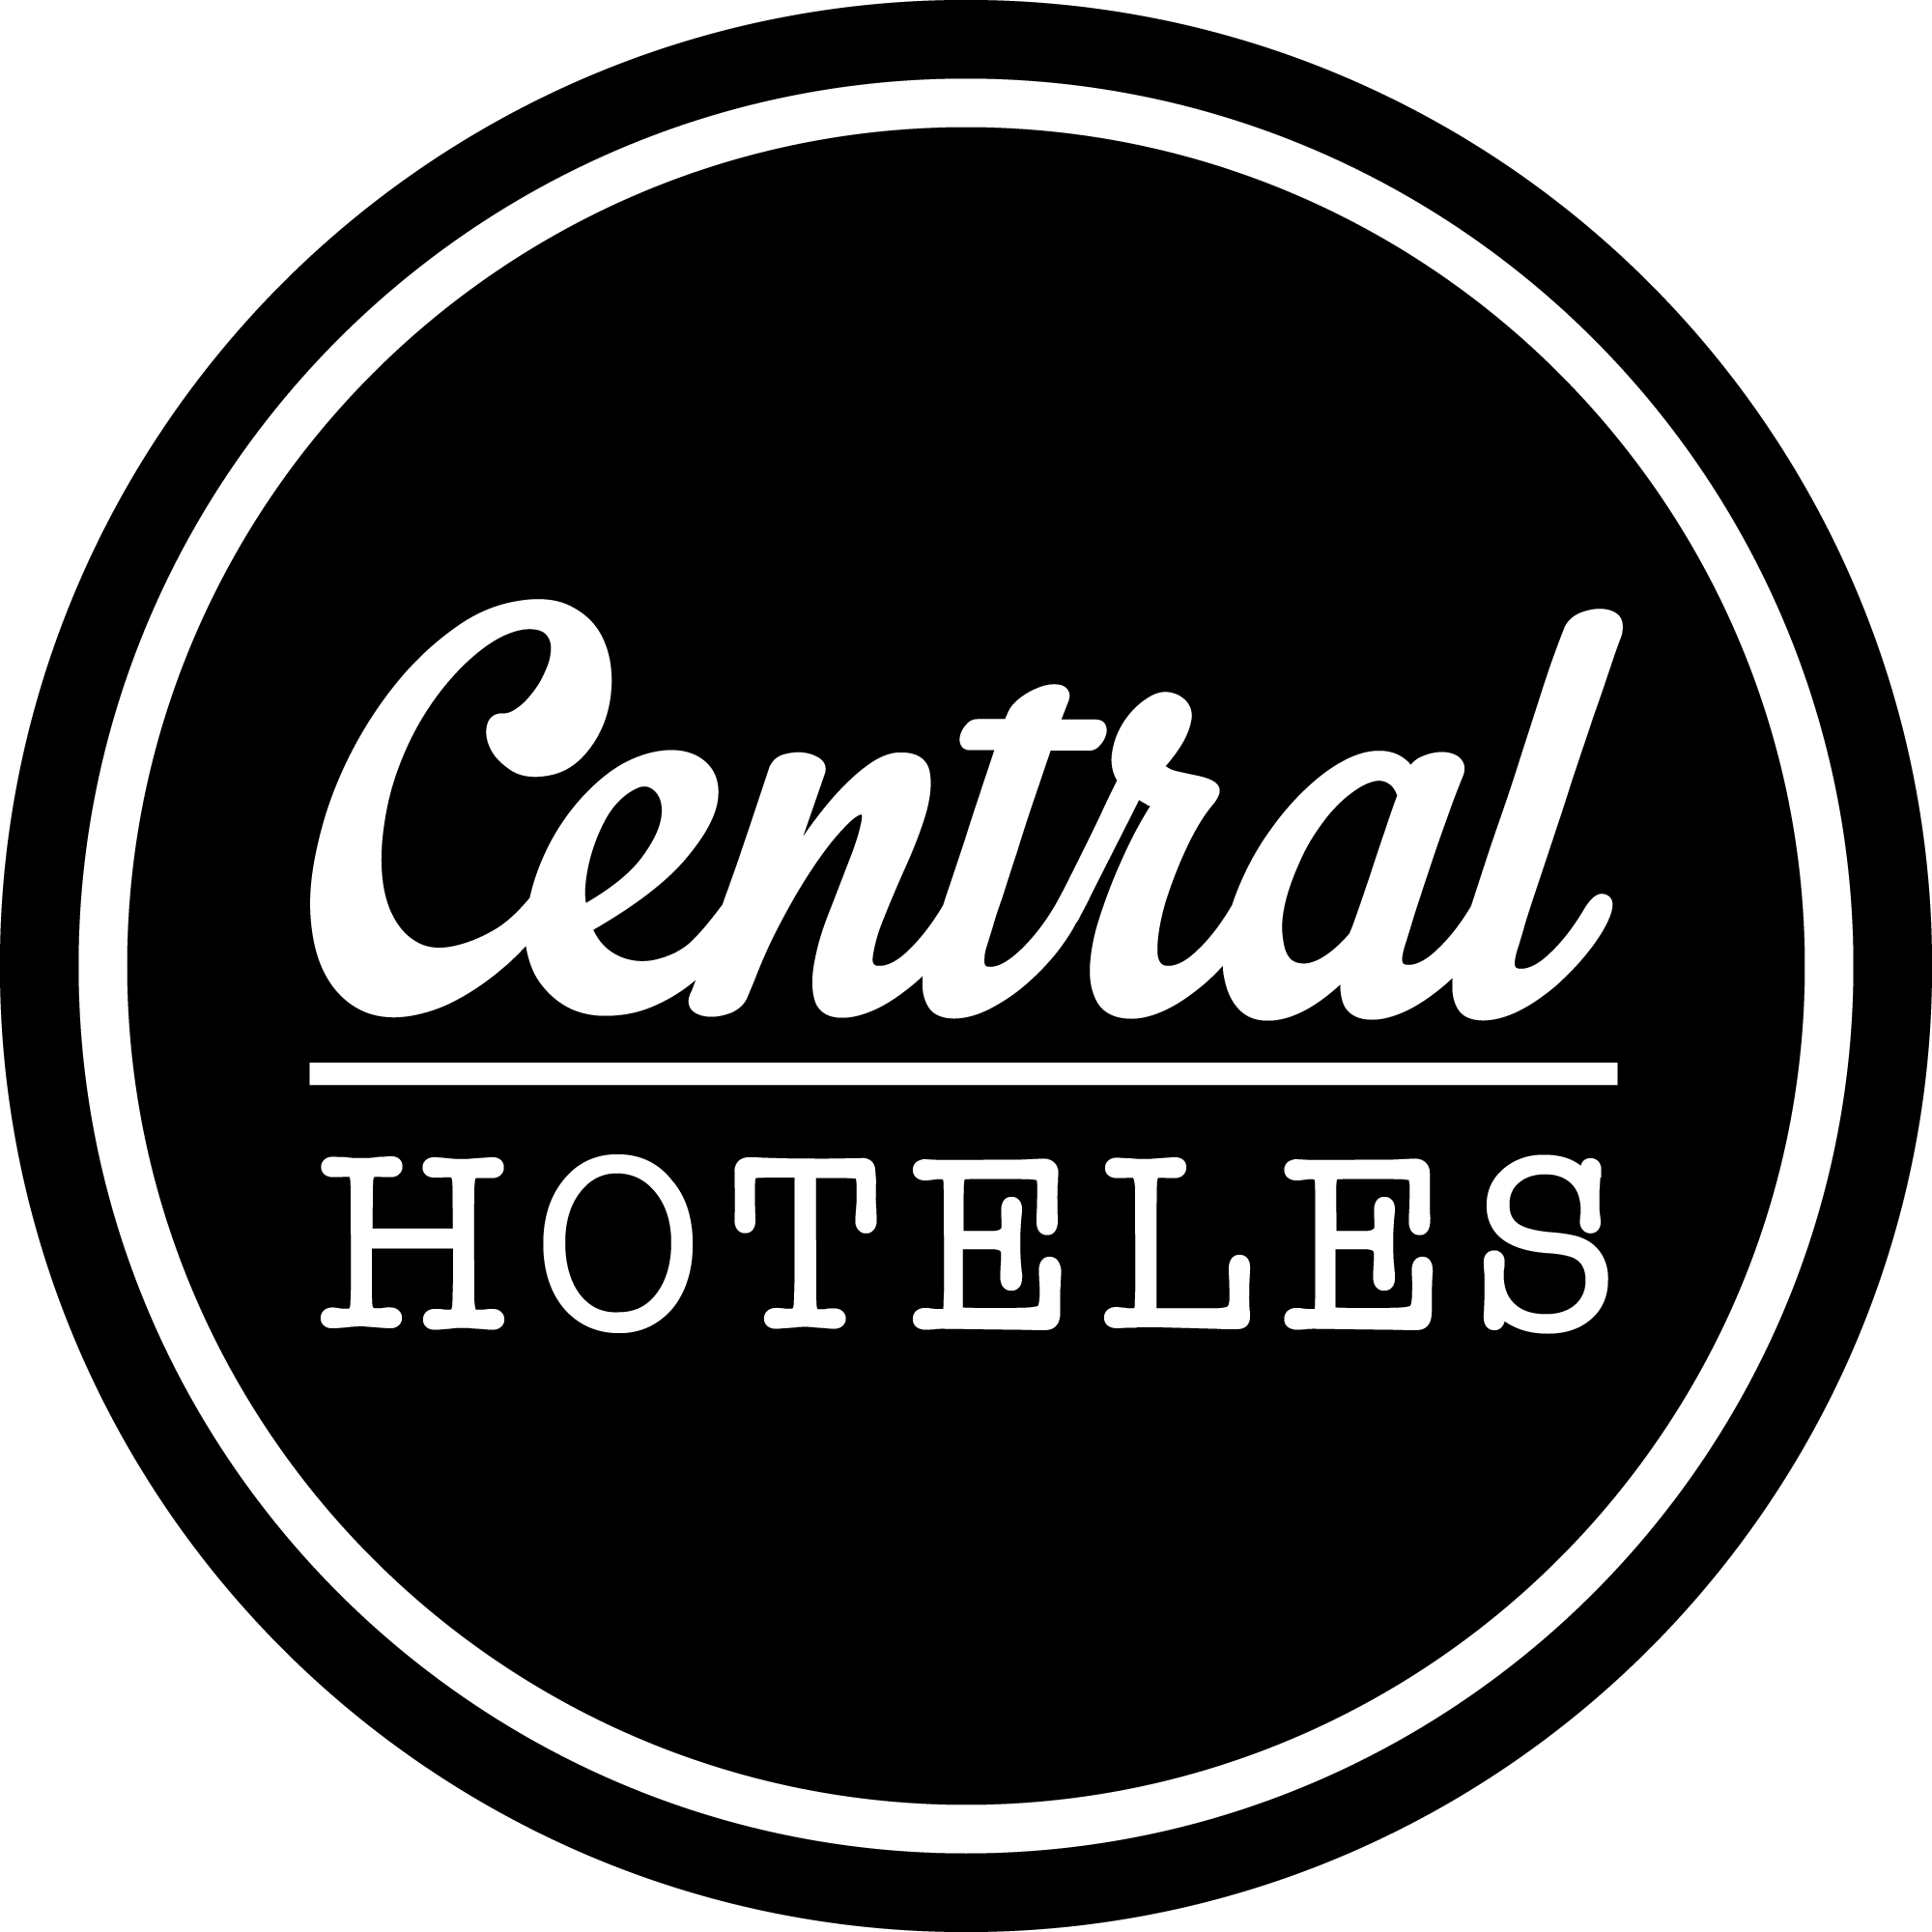 Código Central Hoteles